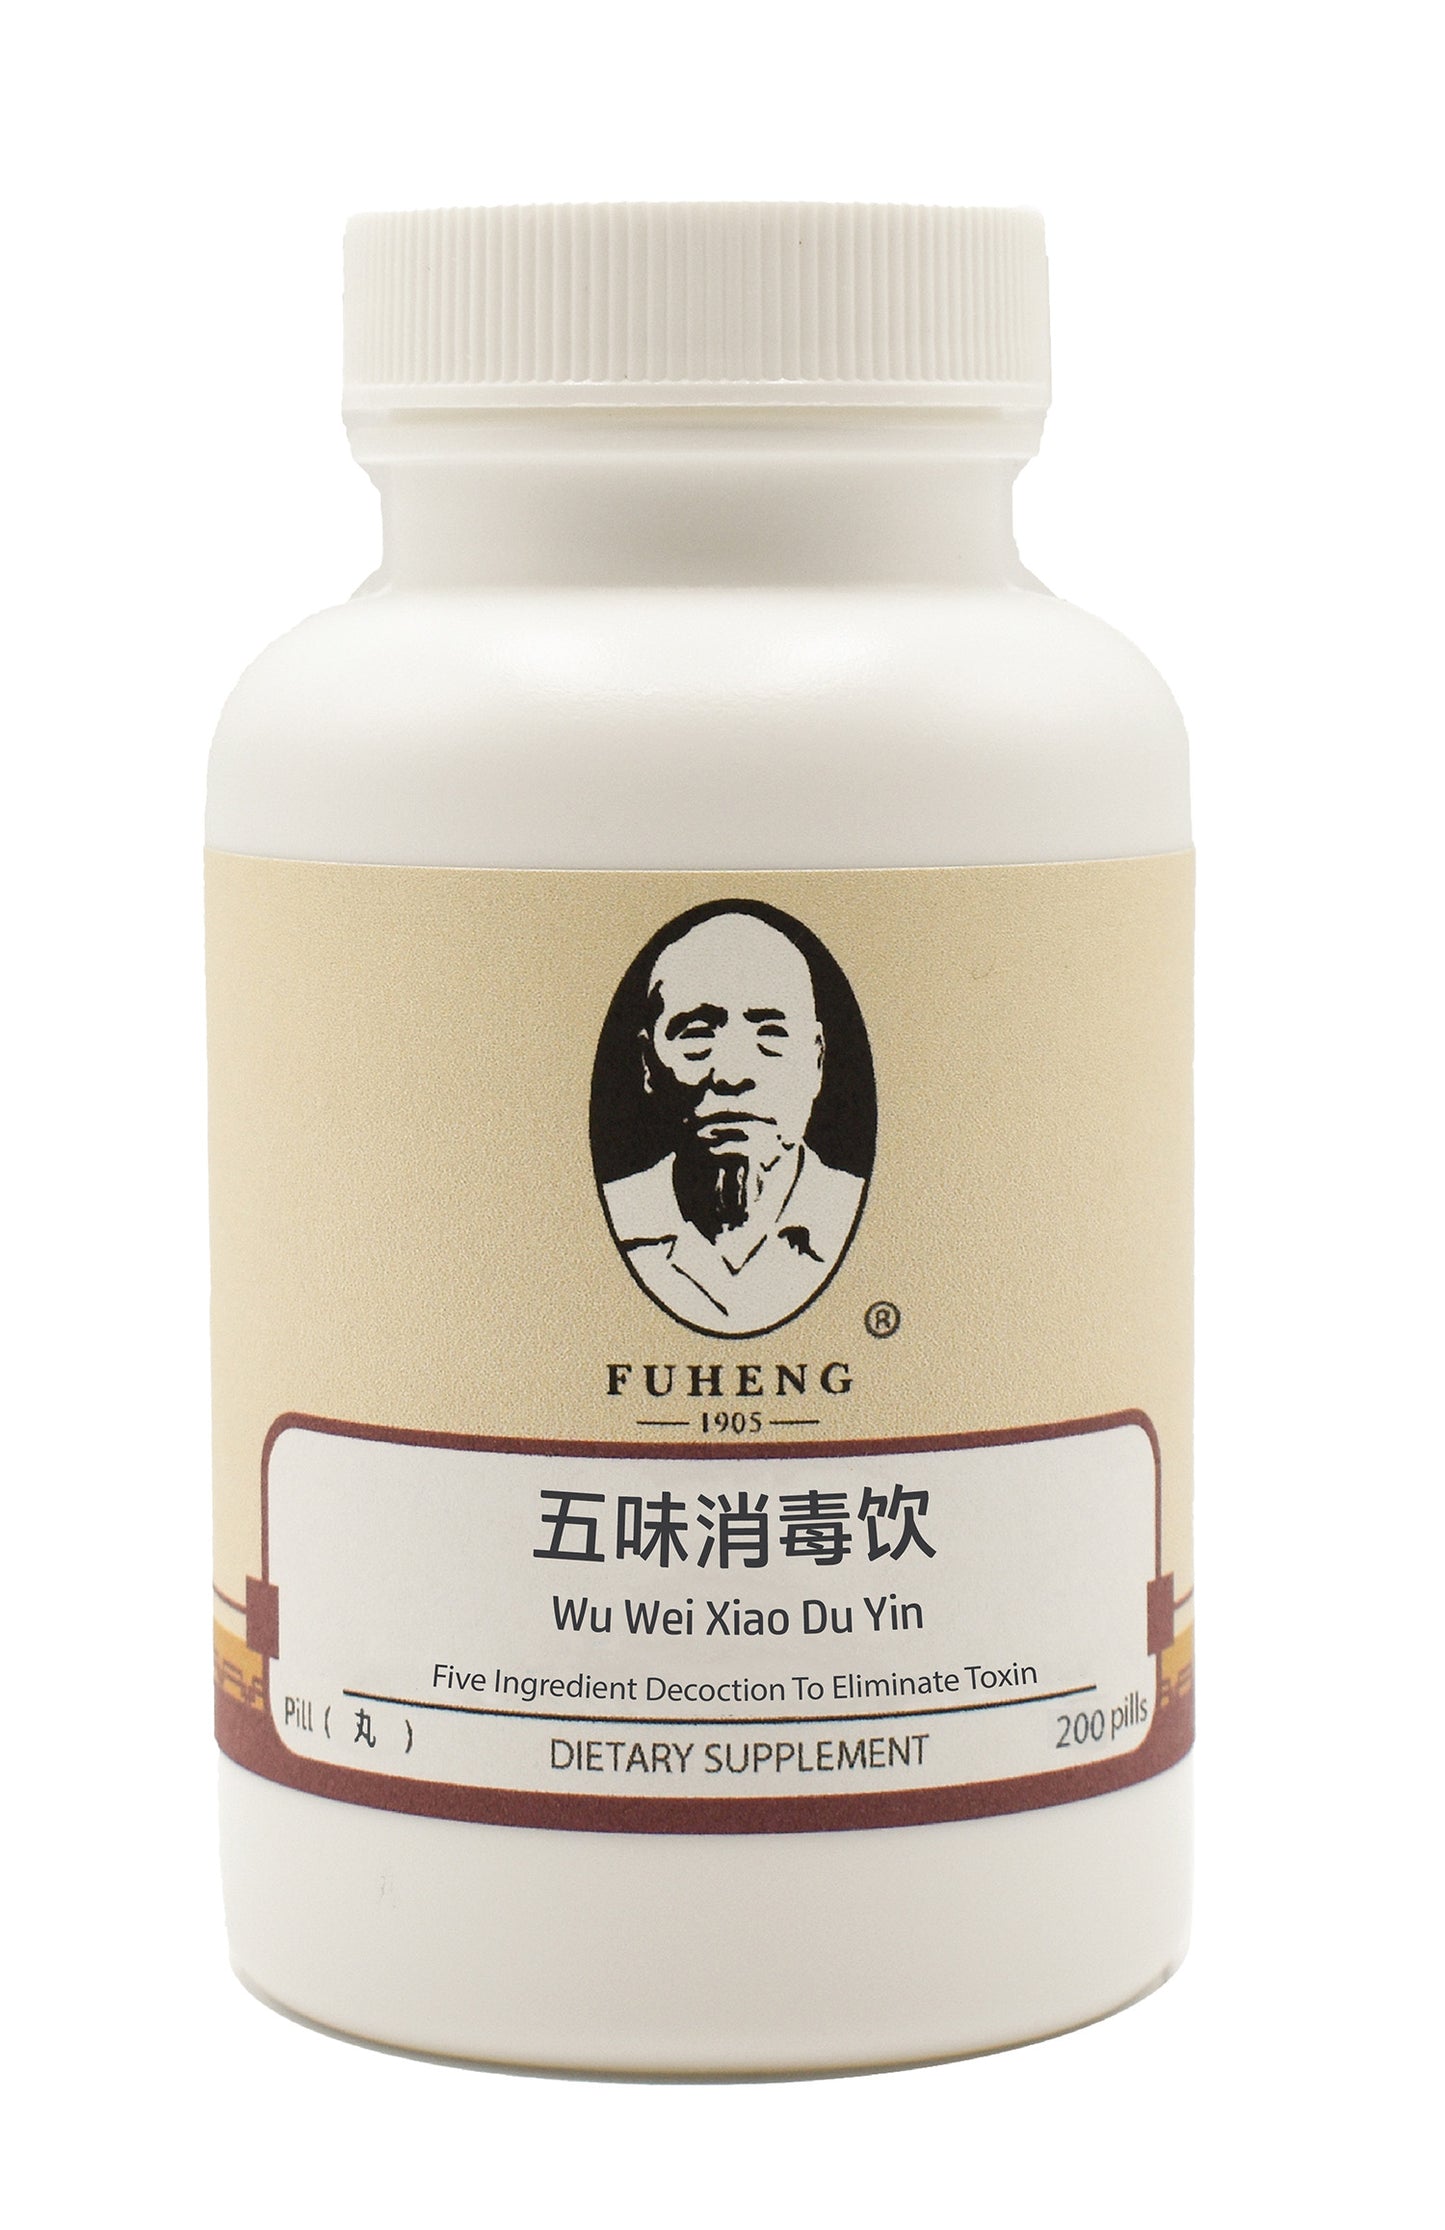 Wu Wei Xiao Du Yin - 五味消毒饮 - 丸剂 - Five Ingredient Decoction To Eliminate Toxin - FUHENG福恒 - Since 1905 - 200 pills